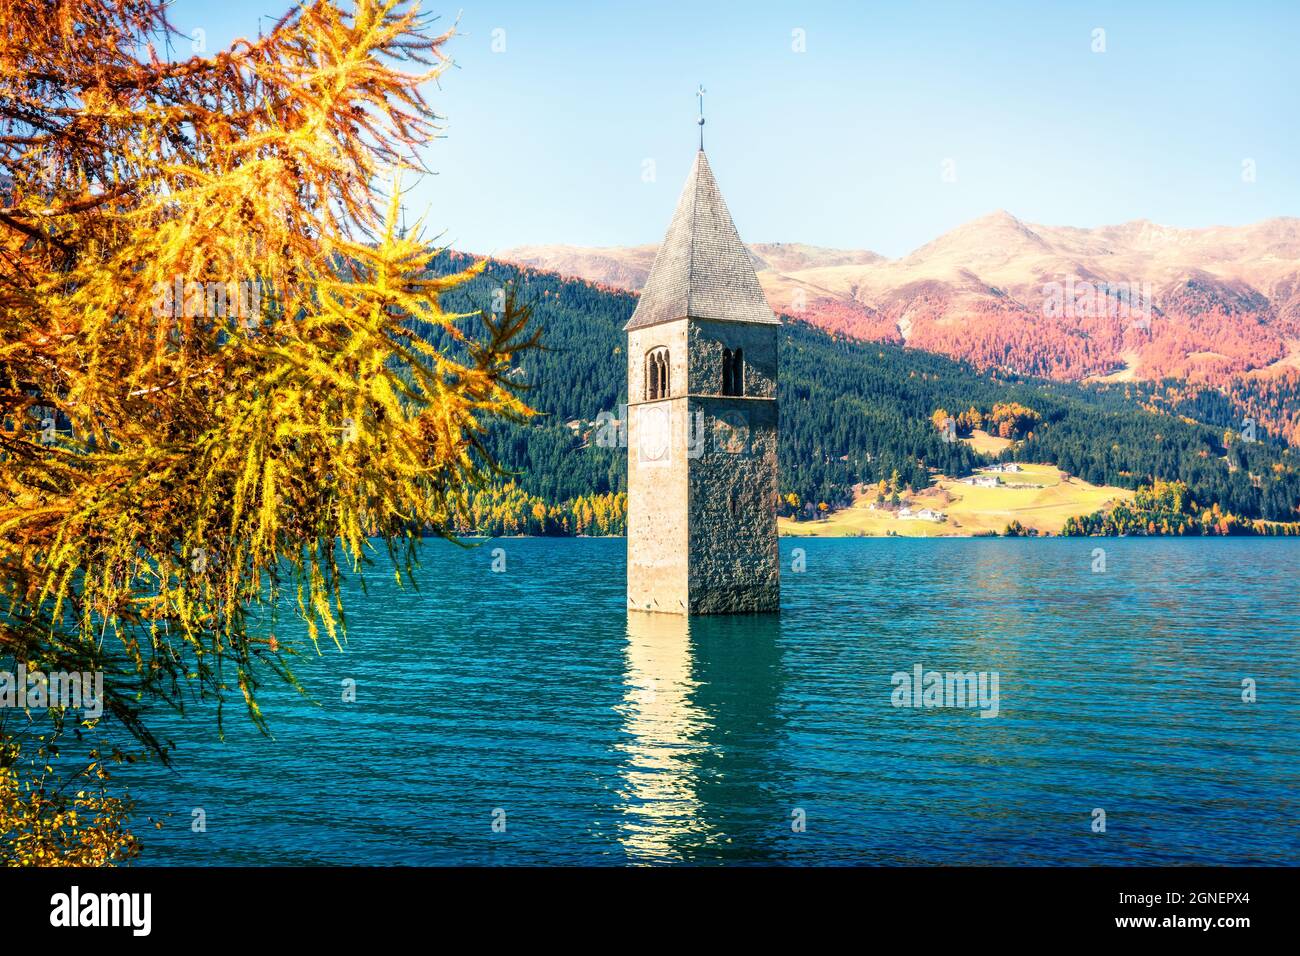 Affascinante vista autunnale del campanile della chiesa di Curon Venosta che sorge dalle acque del lago di Resia, villaggio di Graun im Vinschgau, Trentino-Alto Adige Foto Stock